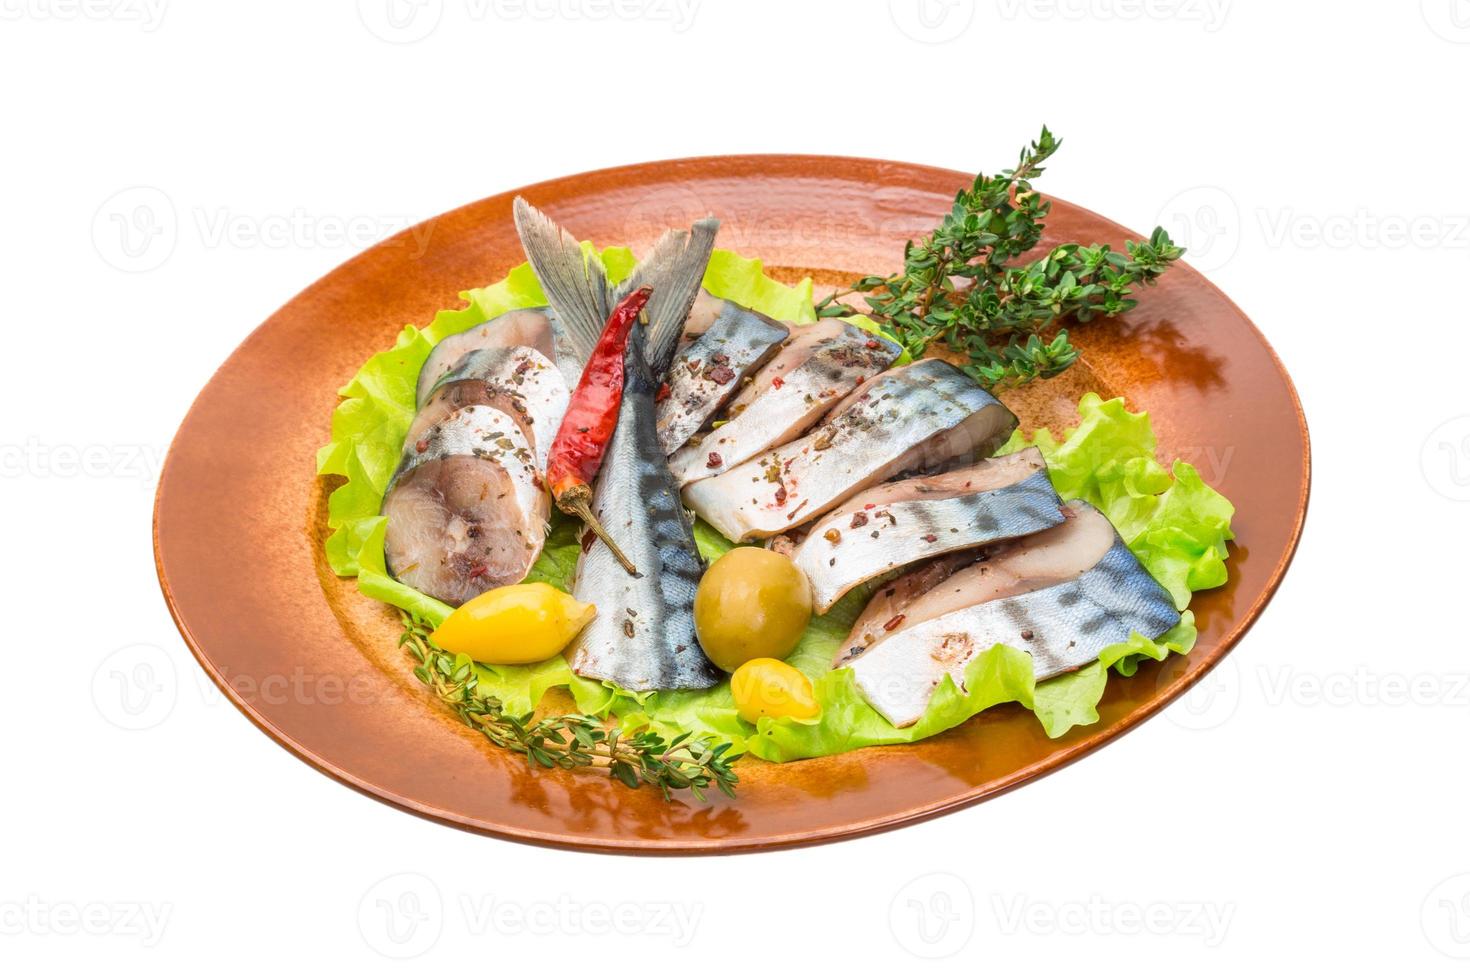 makrillfisk, skivad på en tallrik med sallad foto